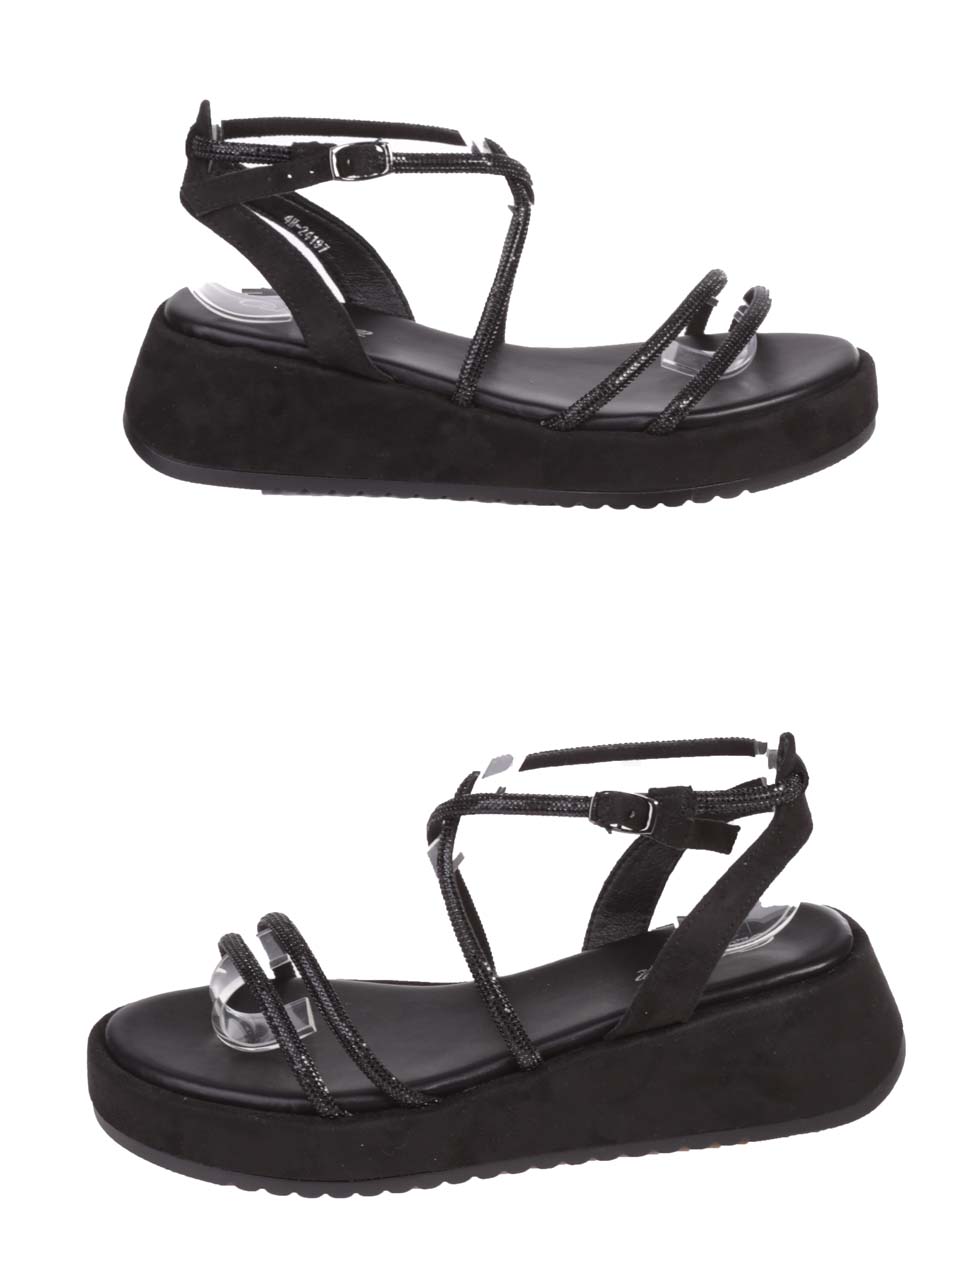 Ежедневни дамски сандали на платформа в черно 4H-24197 black